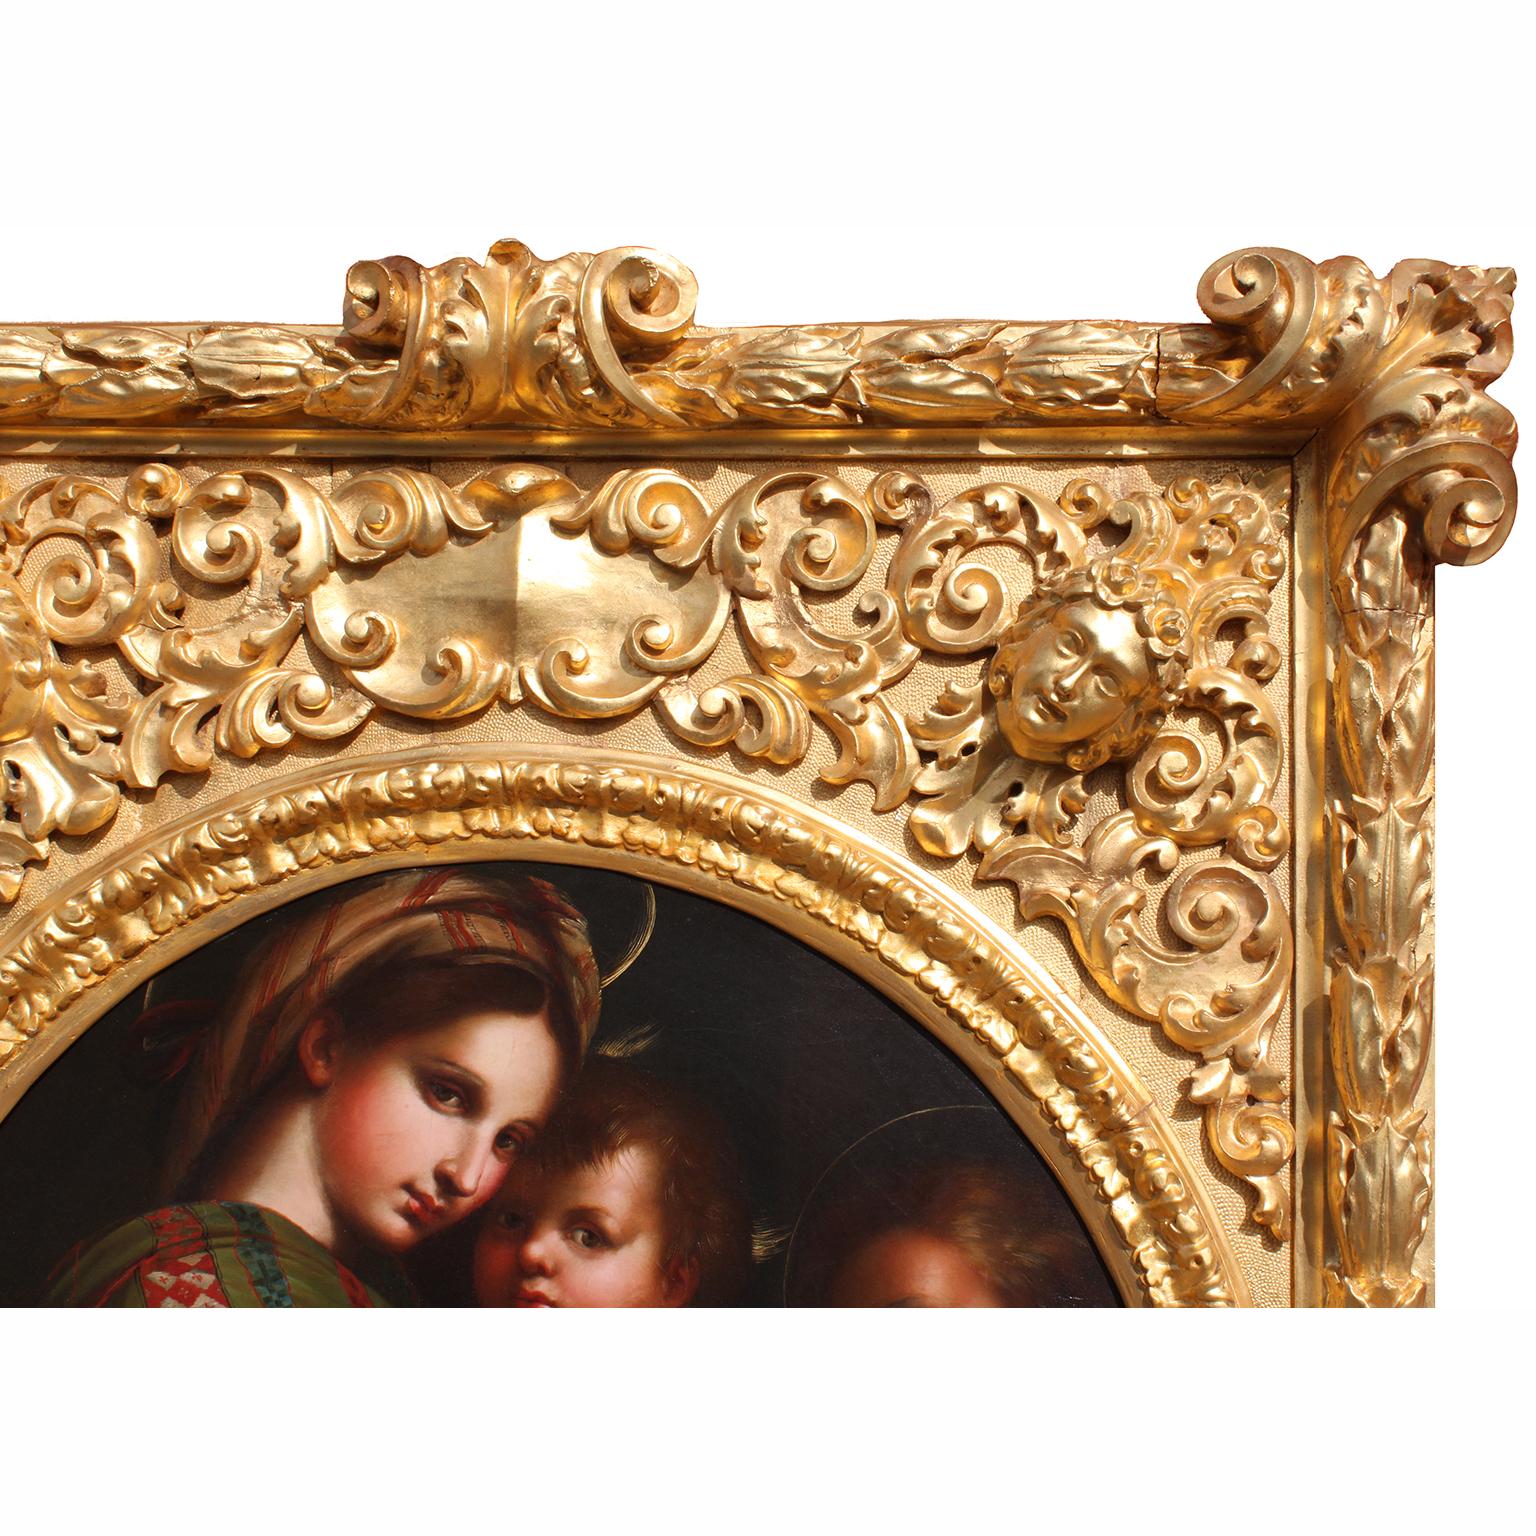 Baroque After Raffaello Sanzio 1483-1520 Raphael La Madonna della Seggiola Oil on Canvas For Sale